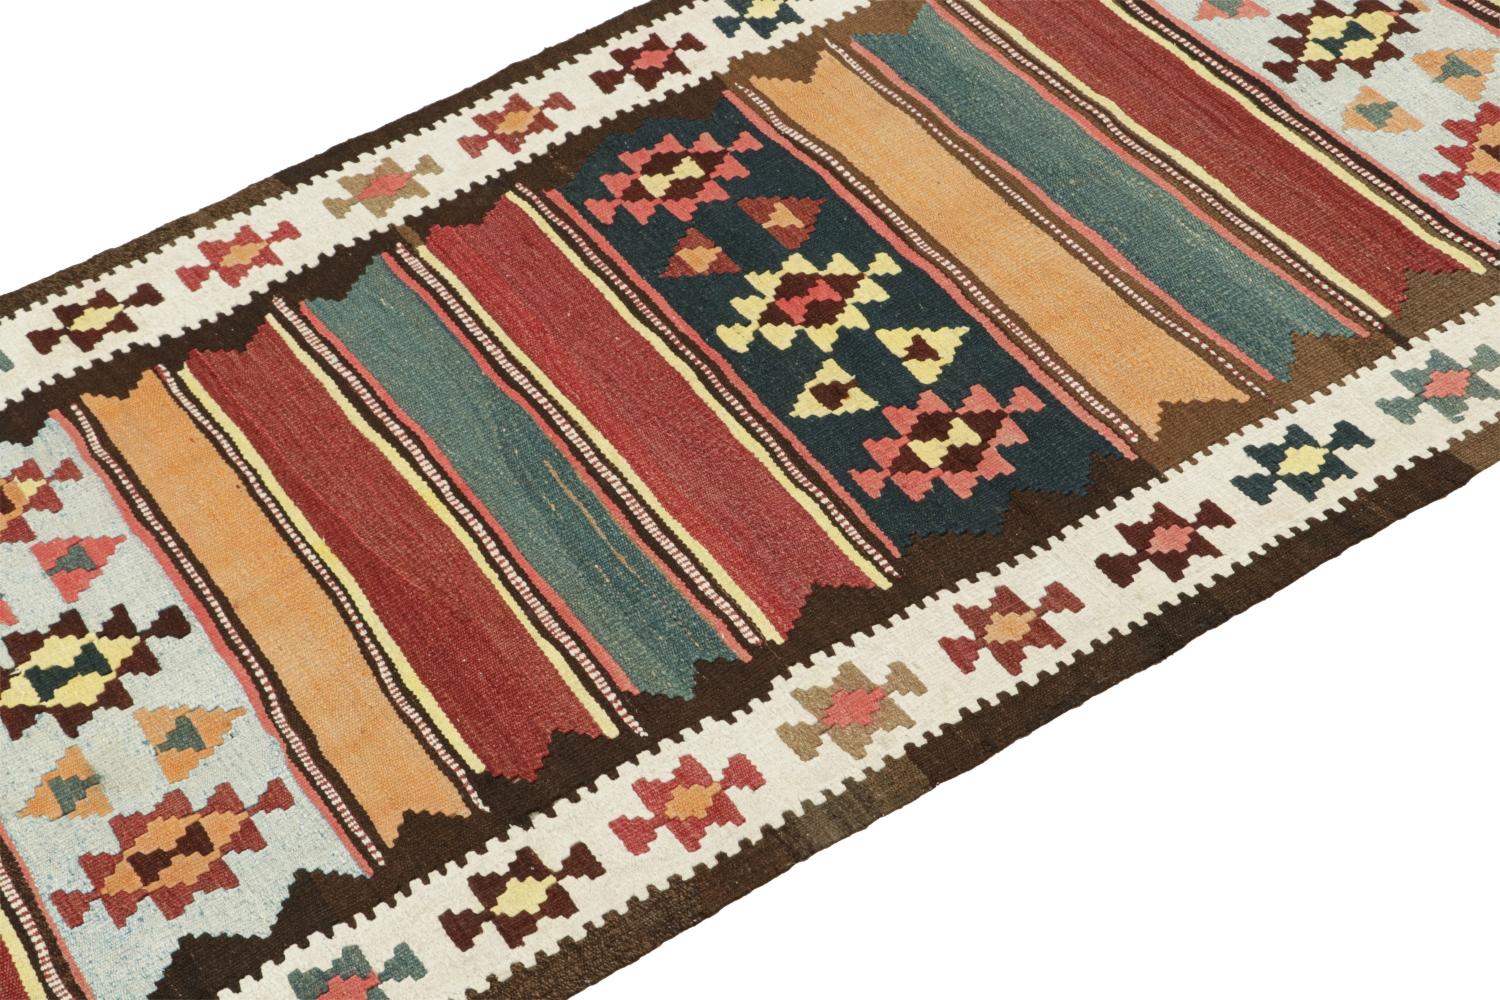 Ce Rug & Kilim persan vintage de 4x10 est un tapis tribal du milieu du siècle que nous pensons être originaire de la tribu Shahsavan. 

Sur le Design :

Tissé à la main en laine vers 1950-1960, son design présente un jeu complémentaire de rayures et